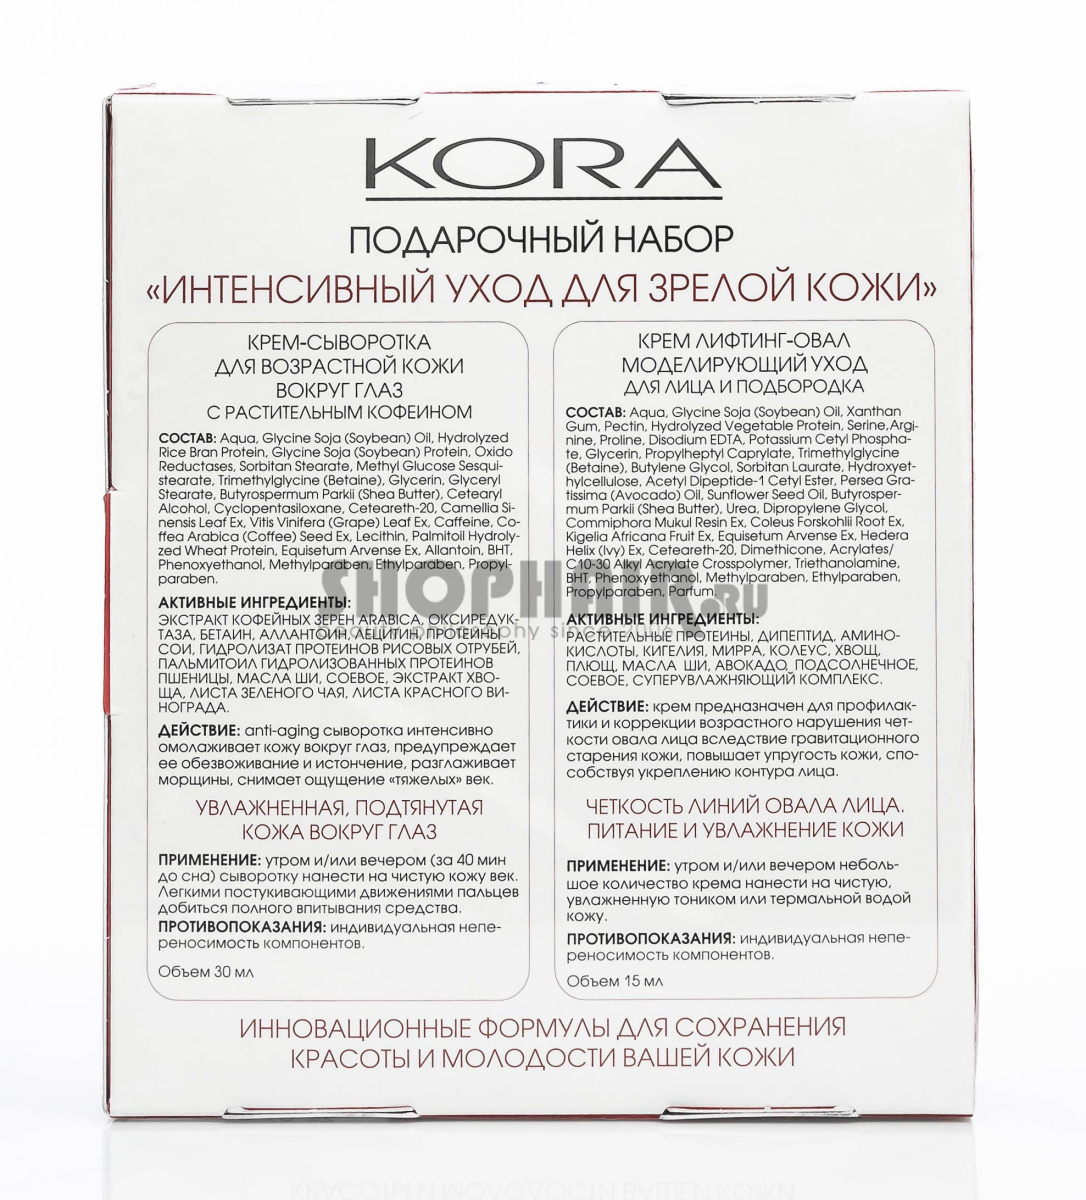 Подарочный набор "Интенсивный уход для зрелой кожи": Крем-сыворотка вокруг глаз с растительным кофеином 30 мл + Крем лифтинг-овал Моделирующий уход 15 мл Kora (Россия) купить по цене 744 руб.